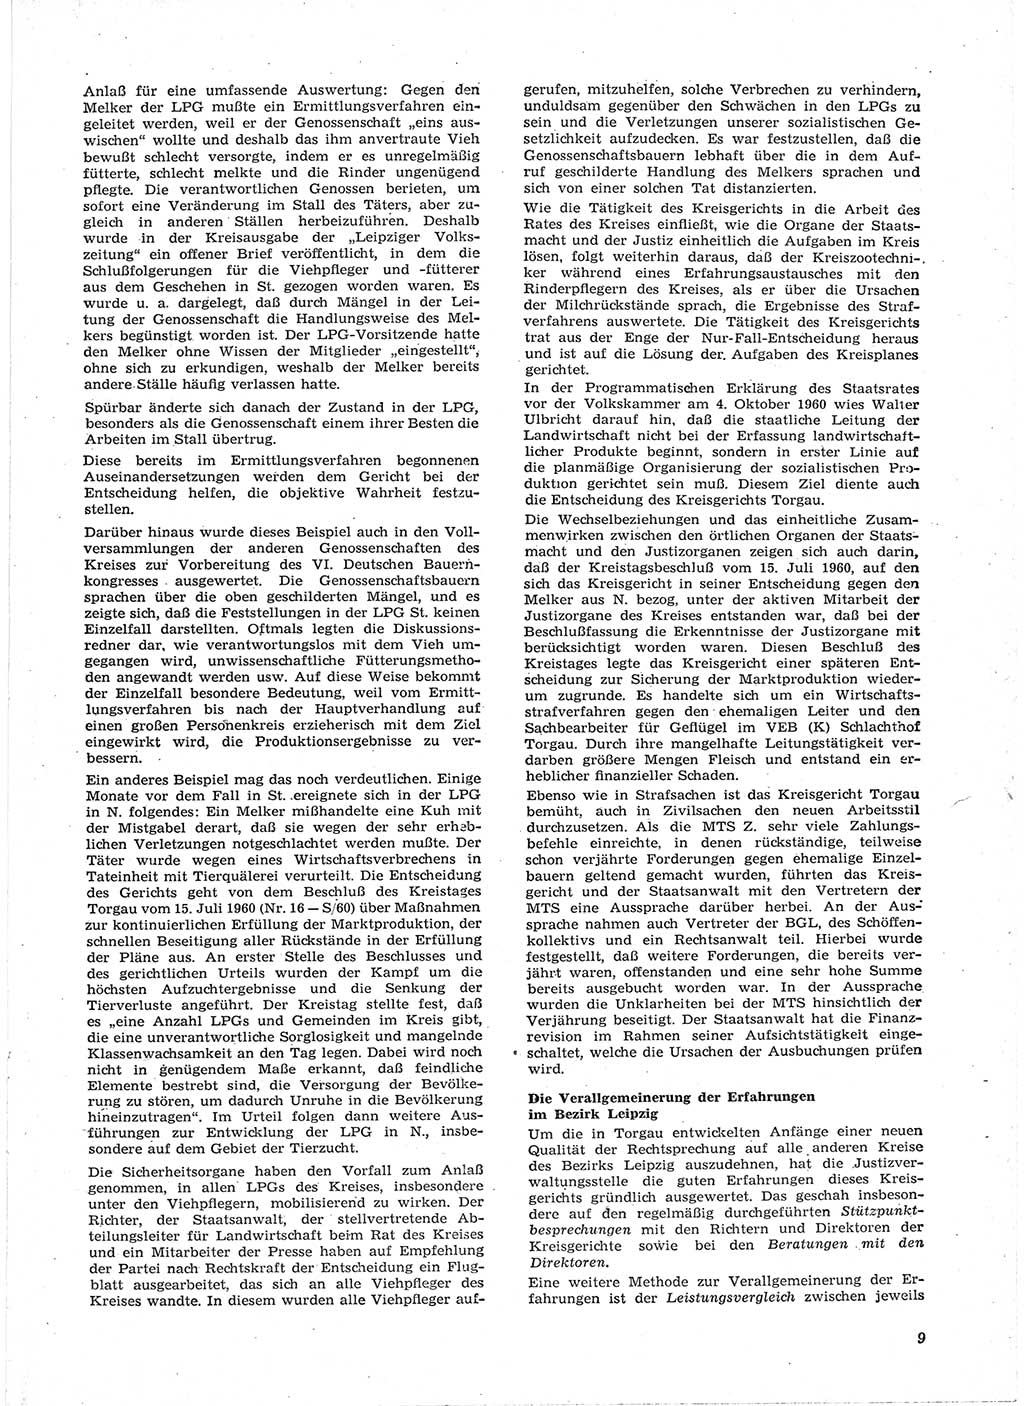 Neue Justiz (NJ), Zeitschrift für Recht und Rechtswissenschaft [Deutsche Demokratische Republik (DDR)], 15. Jahrgang 1961, Seite 9 (NJ DDR 1961, S. 9)